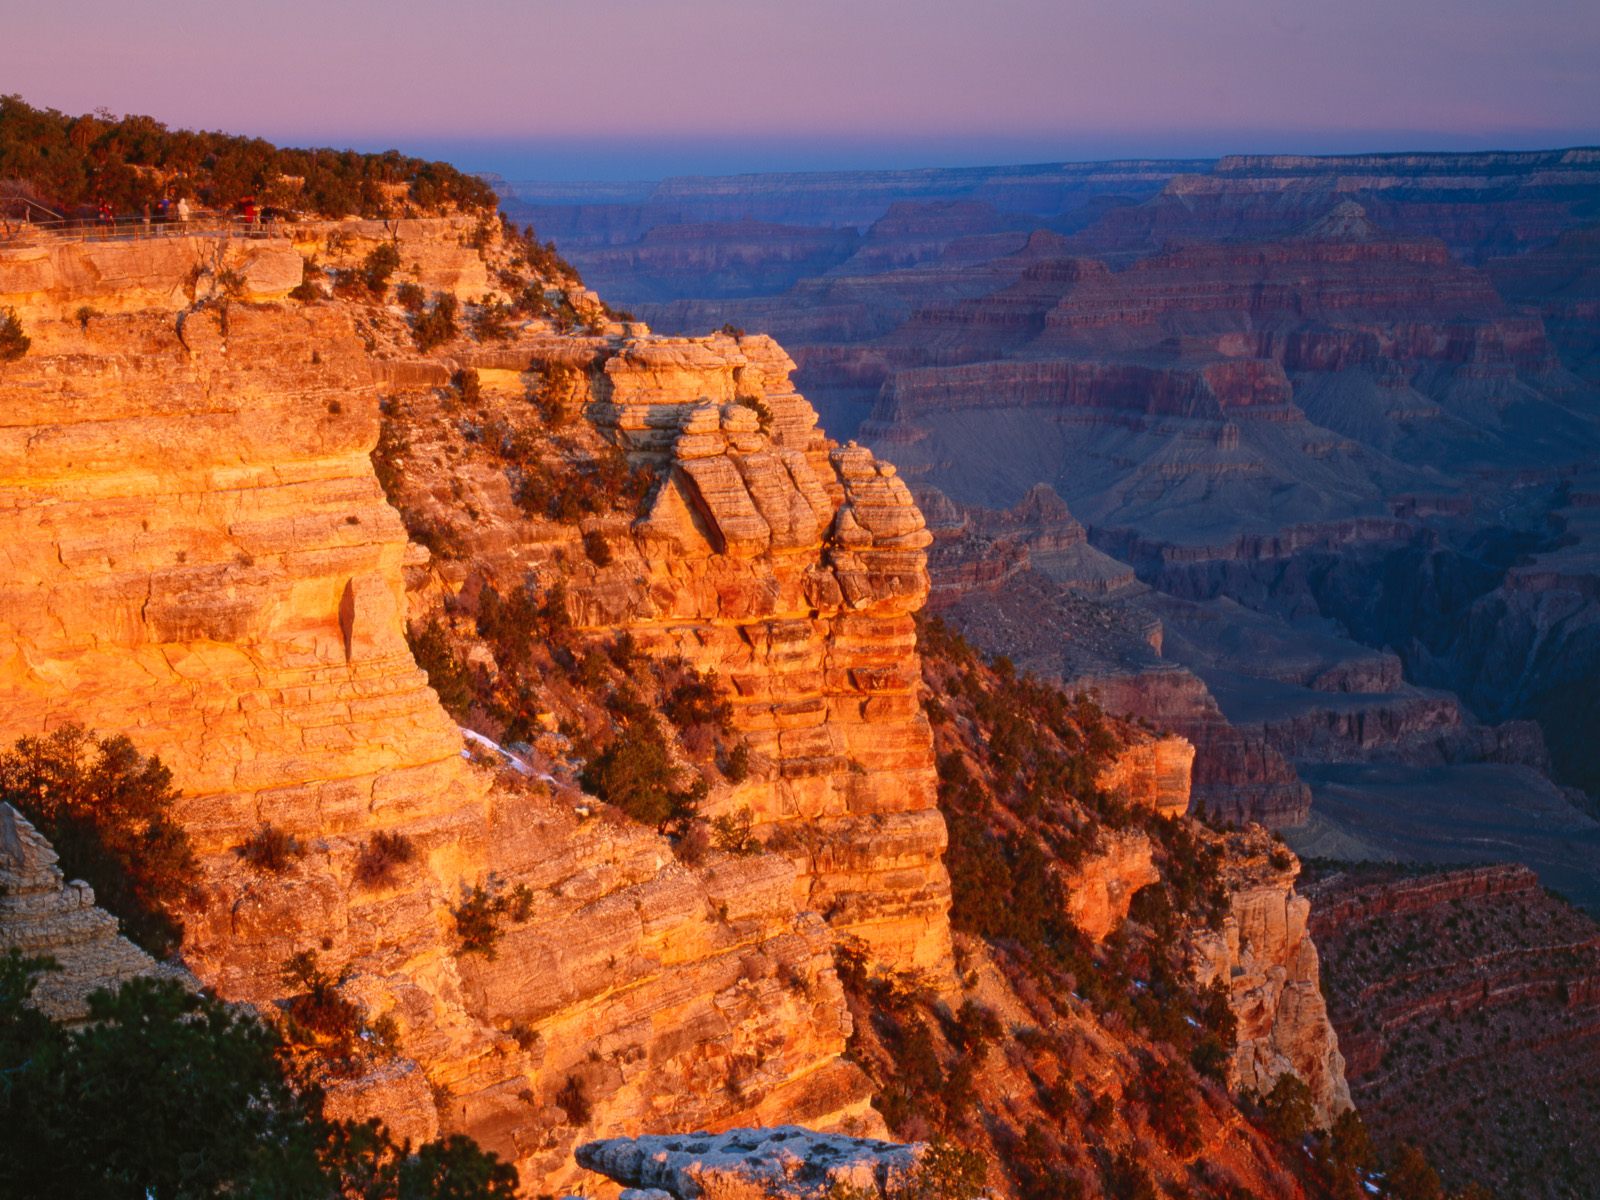 A Grand Canyon nagy része a kutatók szerint csak 5-6 millió éves